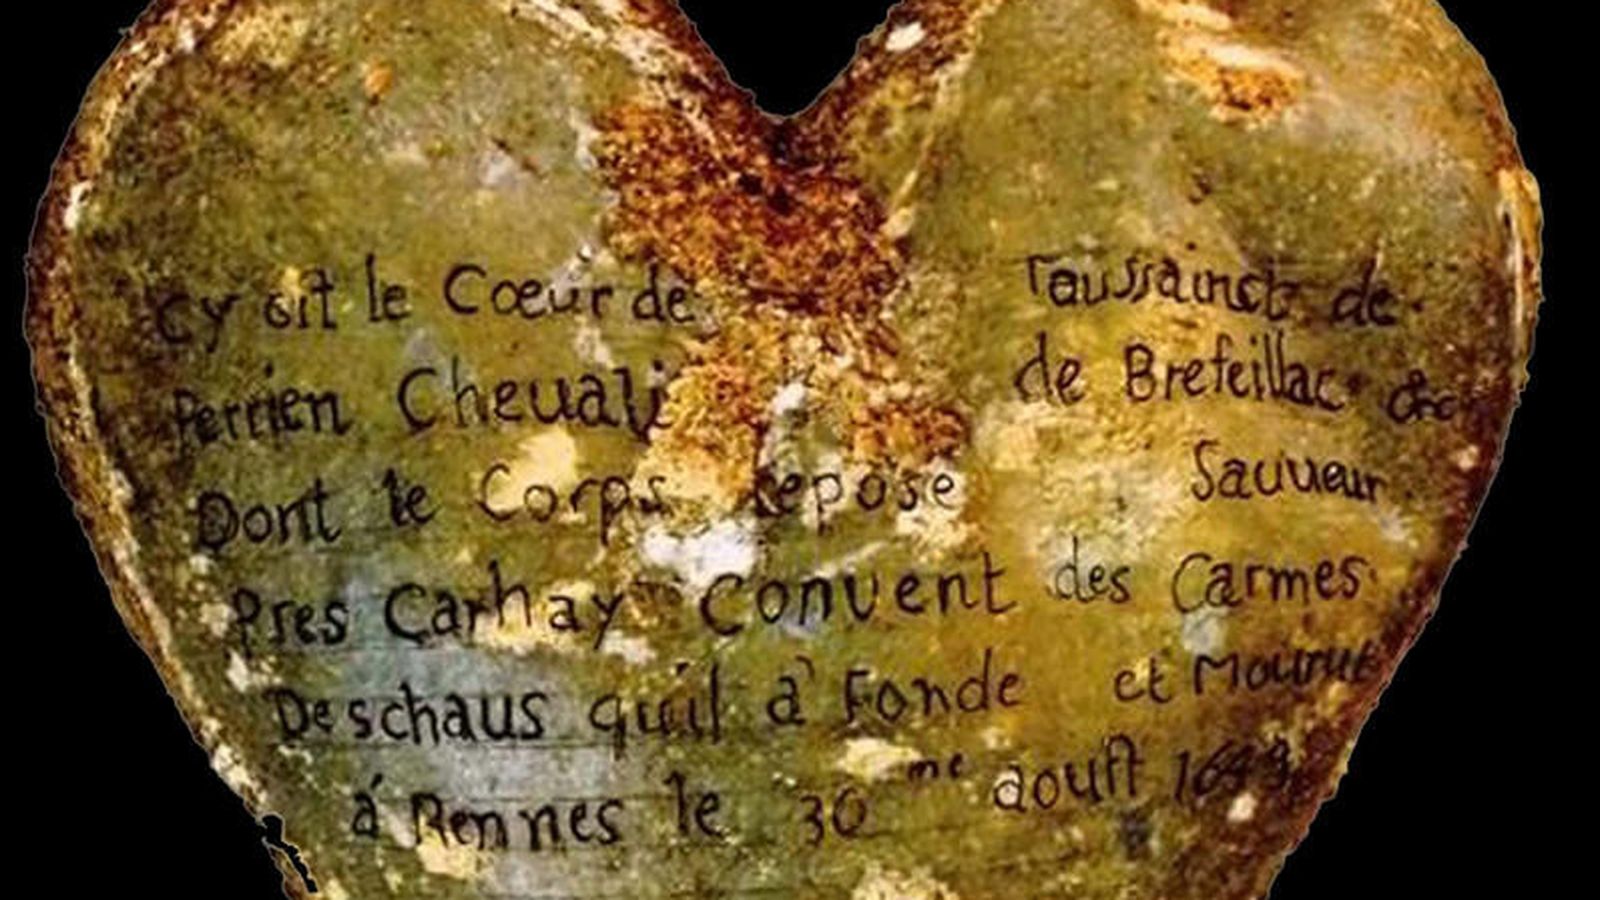 Foto: Inscripción de la urna del corazón de Toussaint Perrien, caballero de Brefeillac, que apareció junto al cuerpo de su esposa. (INRAP)